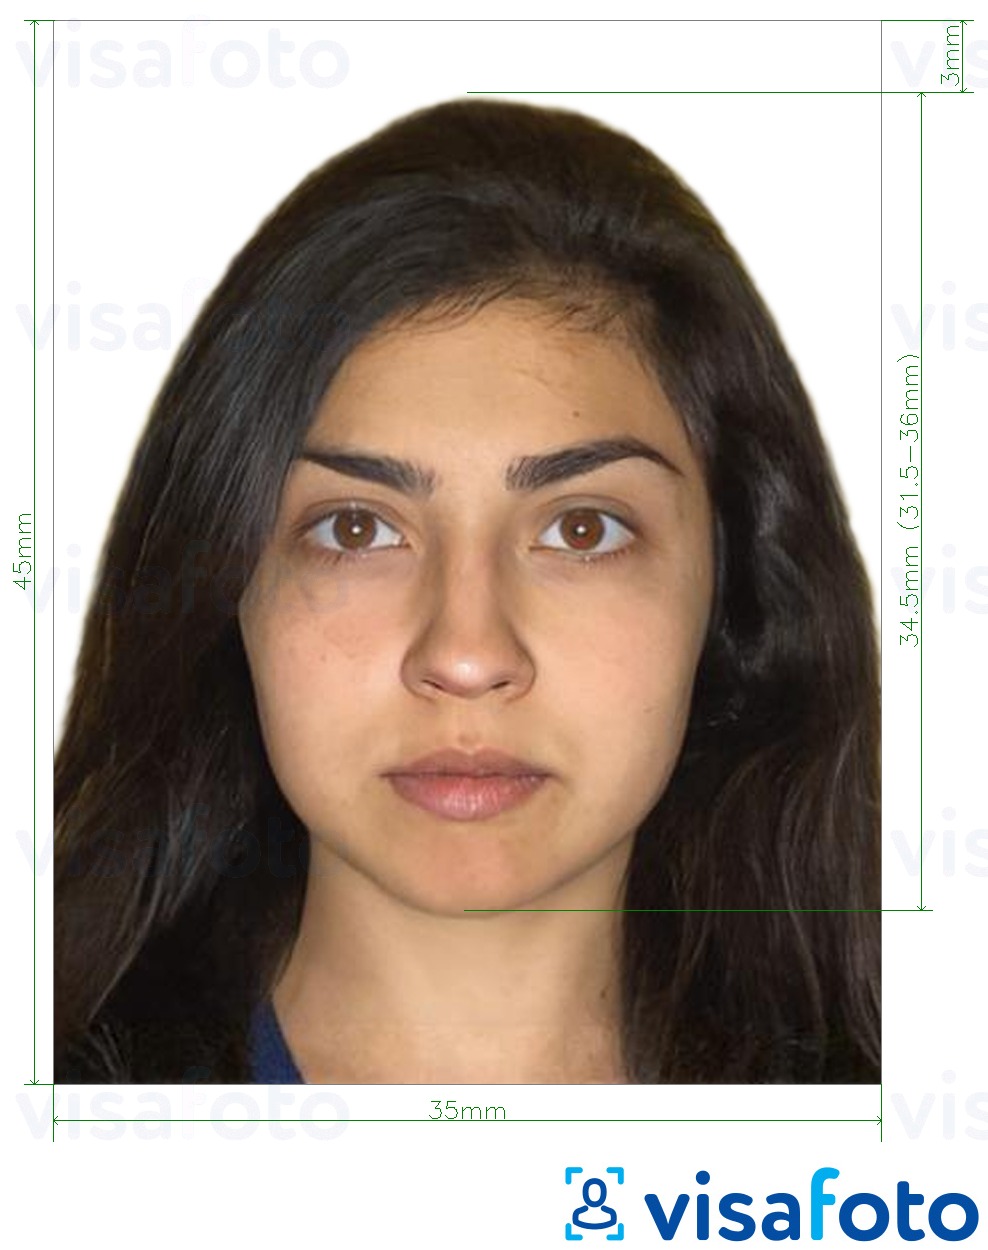 Príklad fotografie pre Žiadosť o cestovný pas pre Bangladéš 45x35 mm (4,5 x 3,5 cm) s presnou špecifikáciou veľkosti